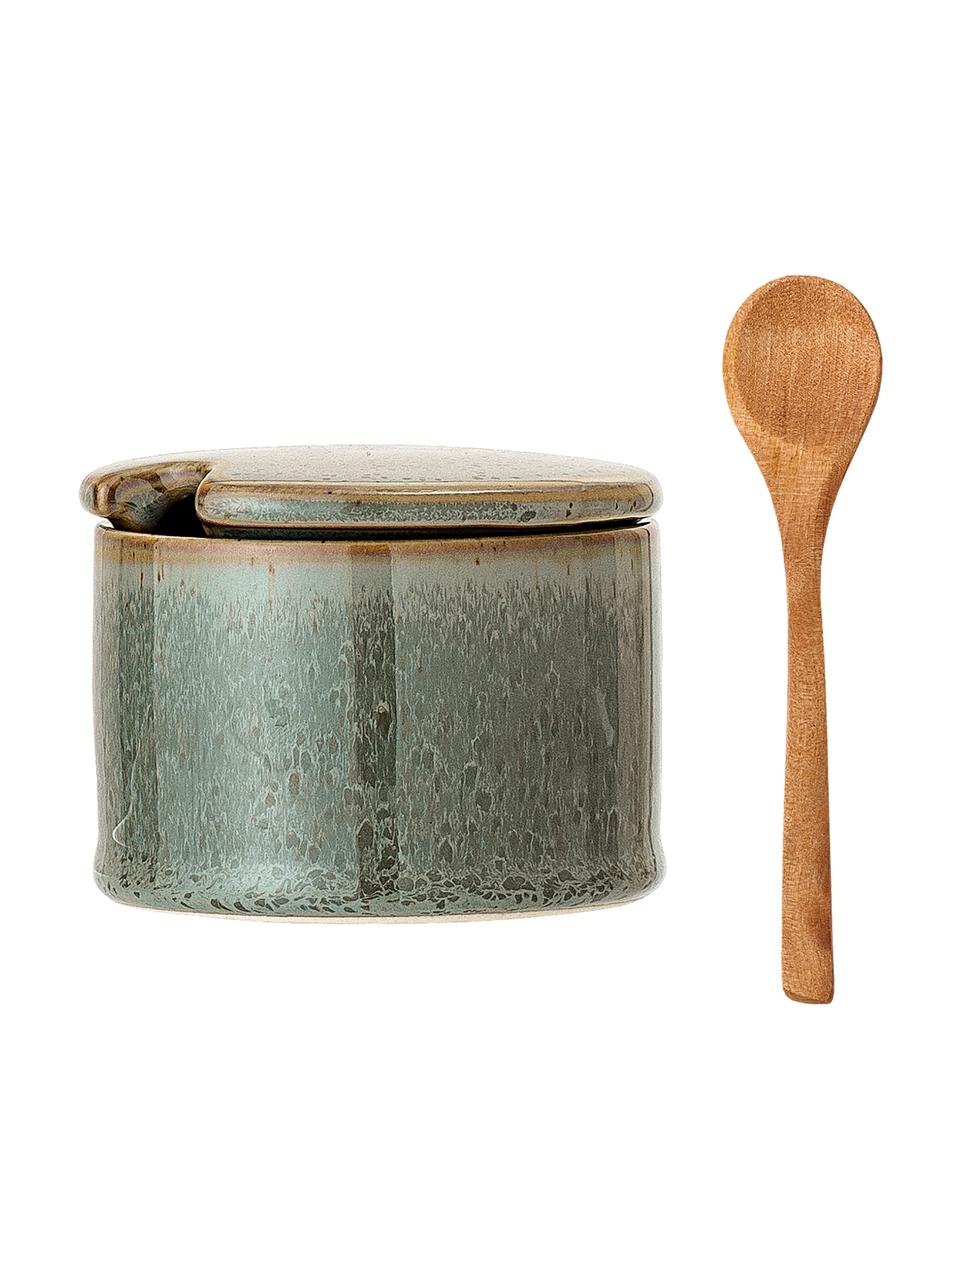 Zuccheriera con cucchiaio di legno Pixie, Contenitore: gres, Cucchiaio: legno d'acacia, Tonalità verdi, tonalità marroni, Ø 8 x Alt. 6 cm